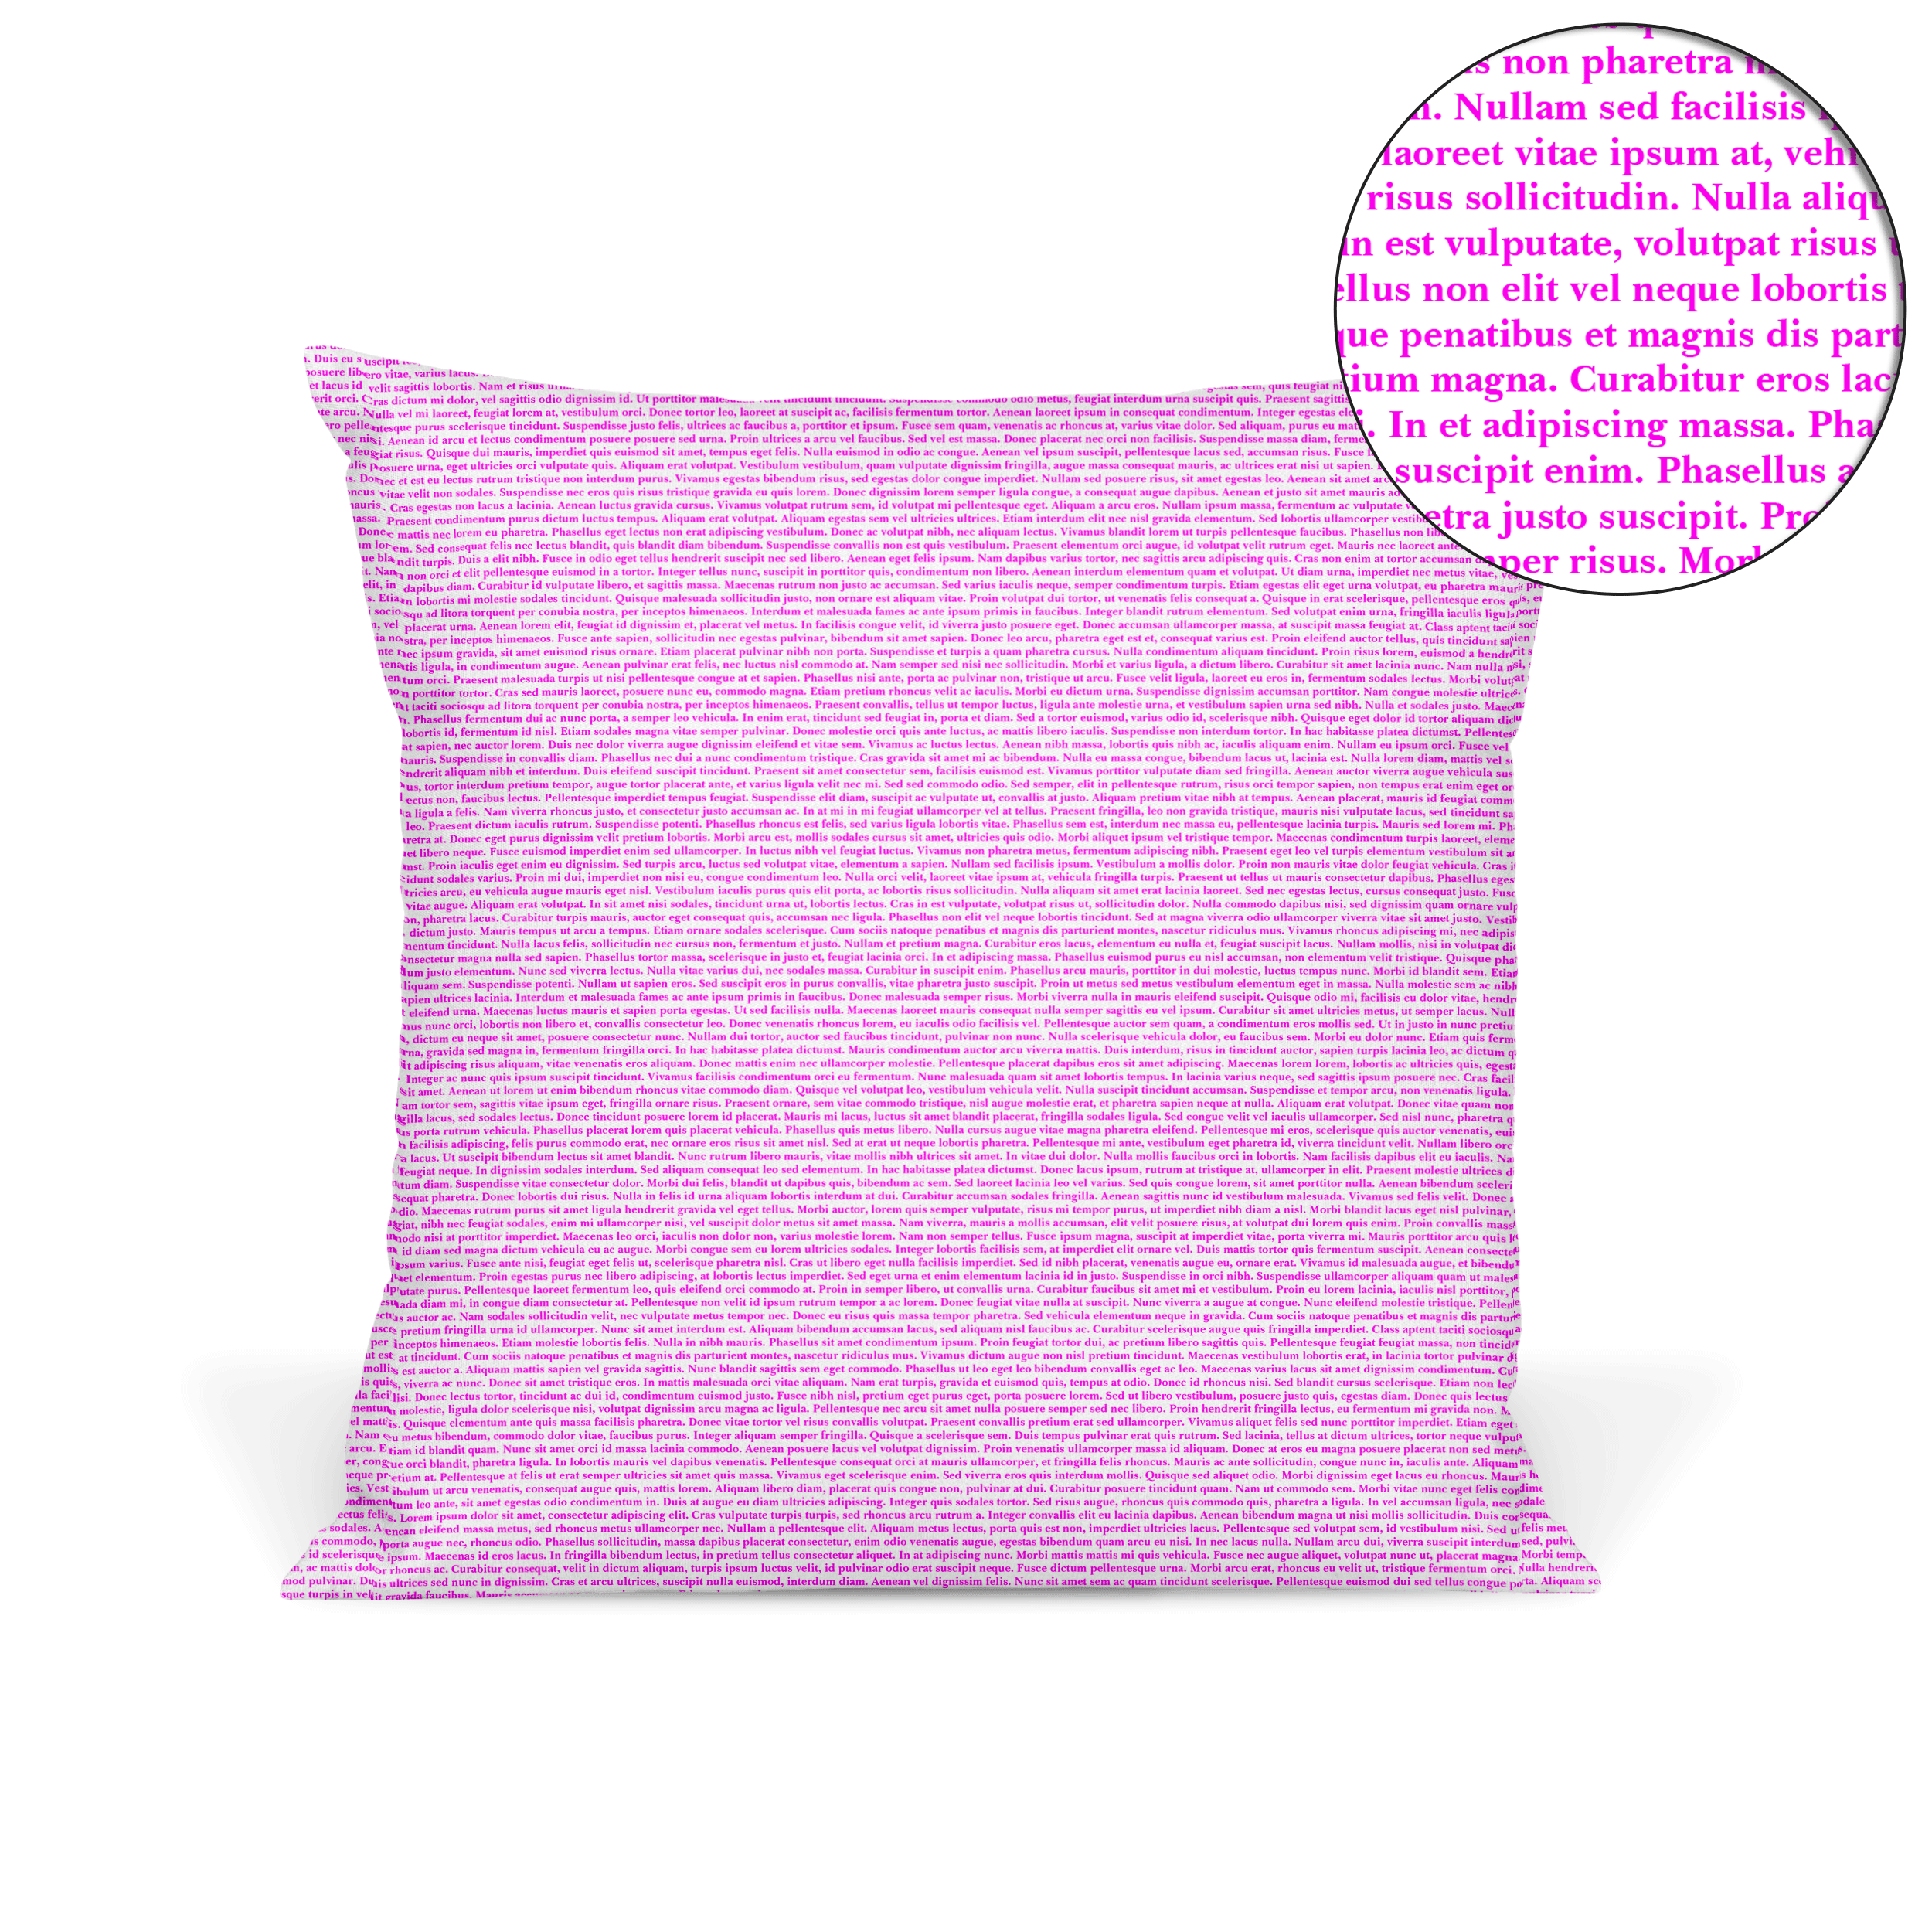 Picture Pillow 9 squares – Linda's Custom Designs